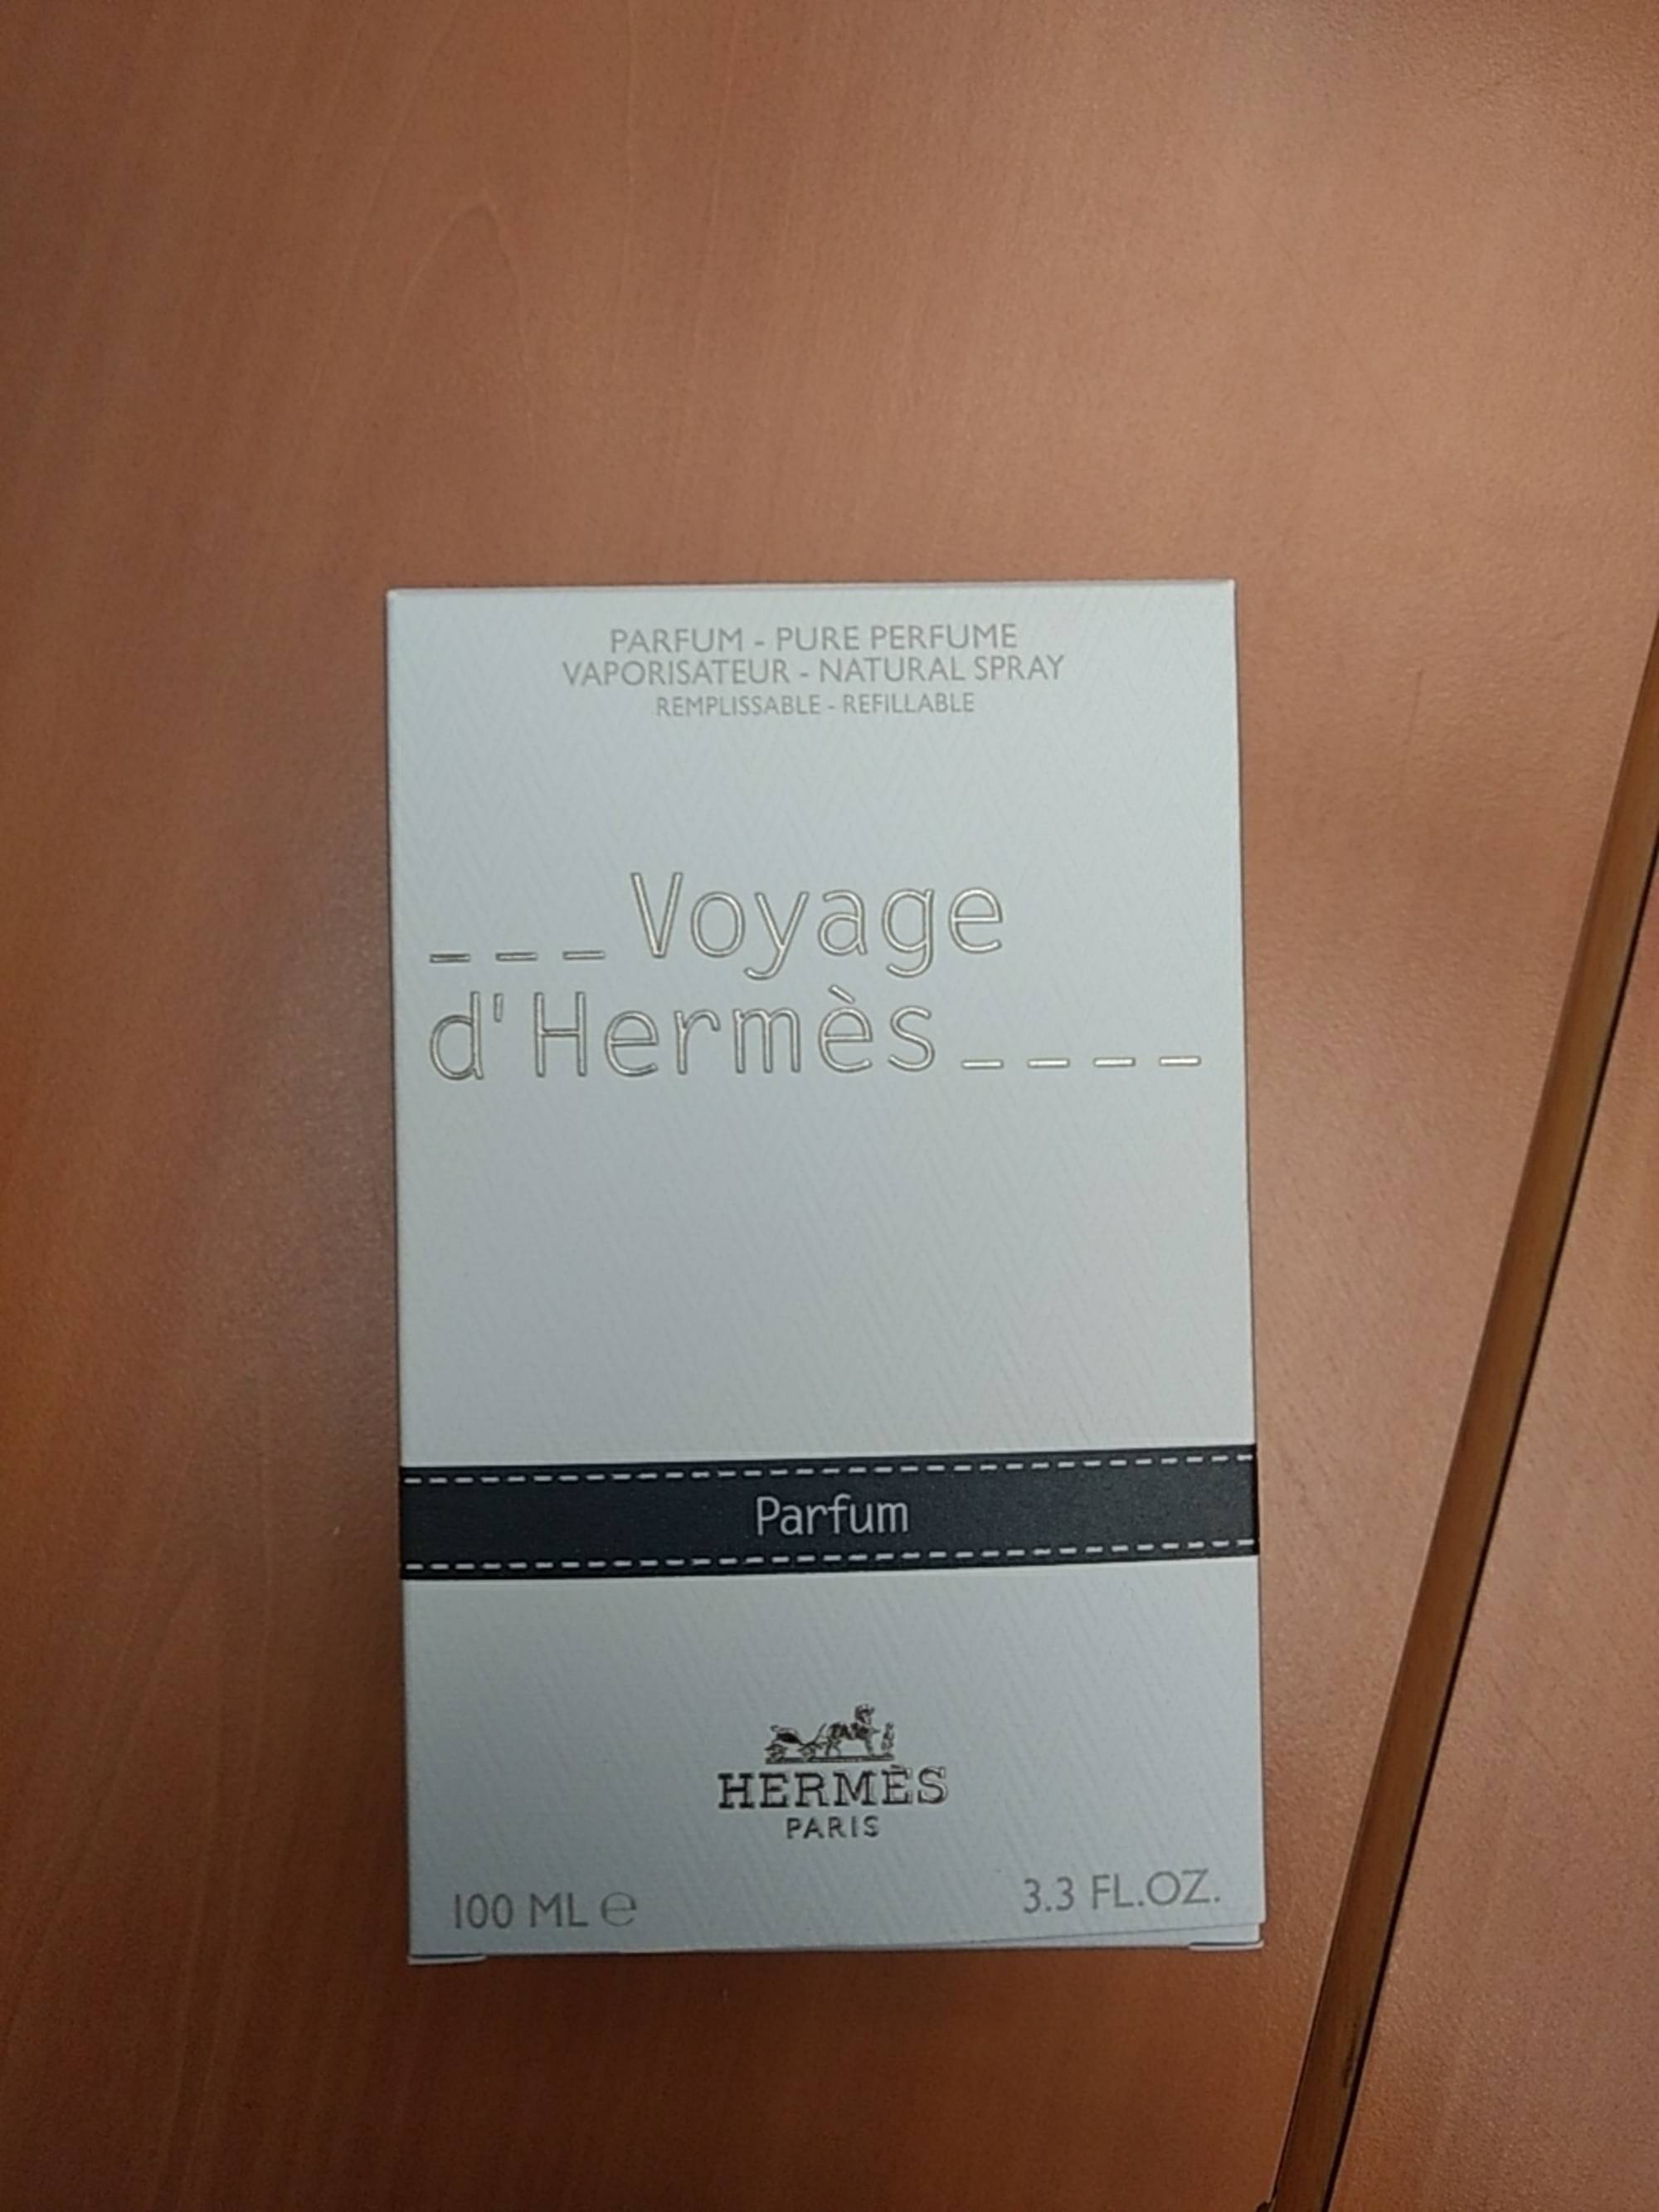 HERMES - Voyage d'hermès - Parfum